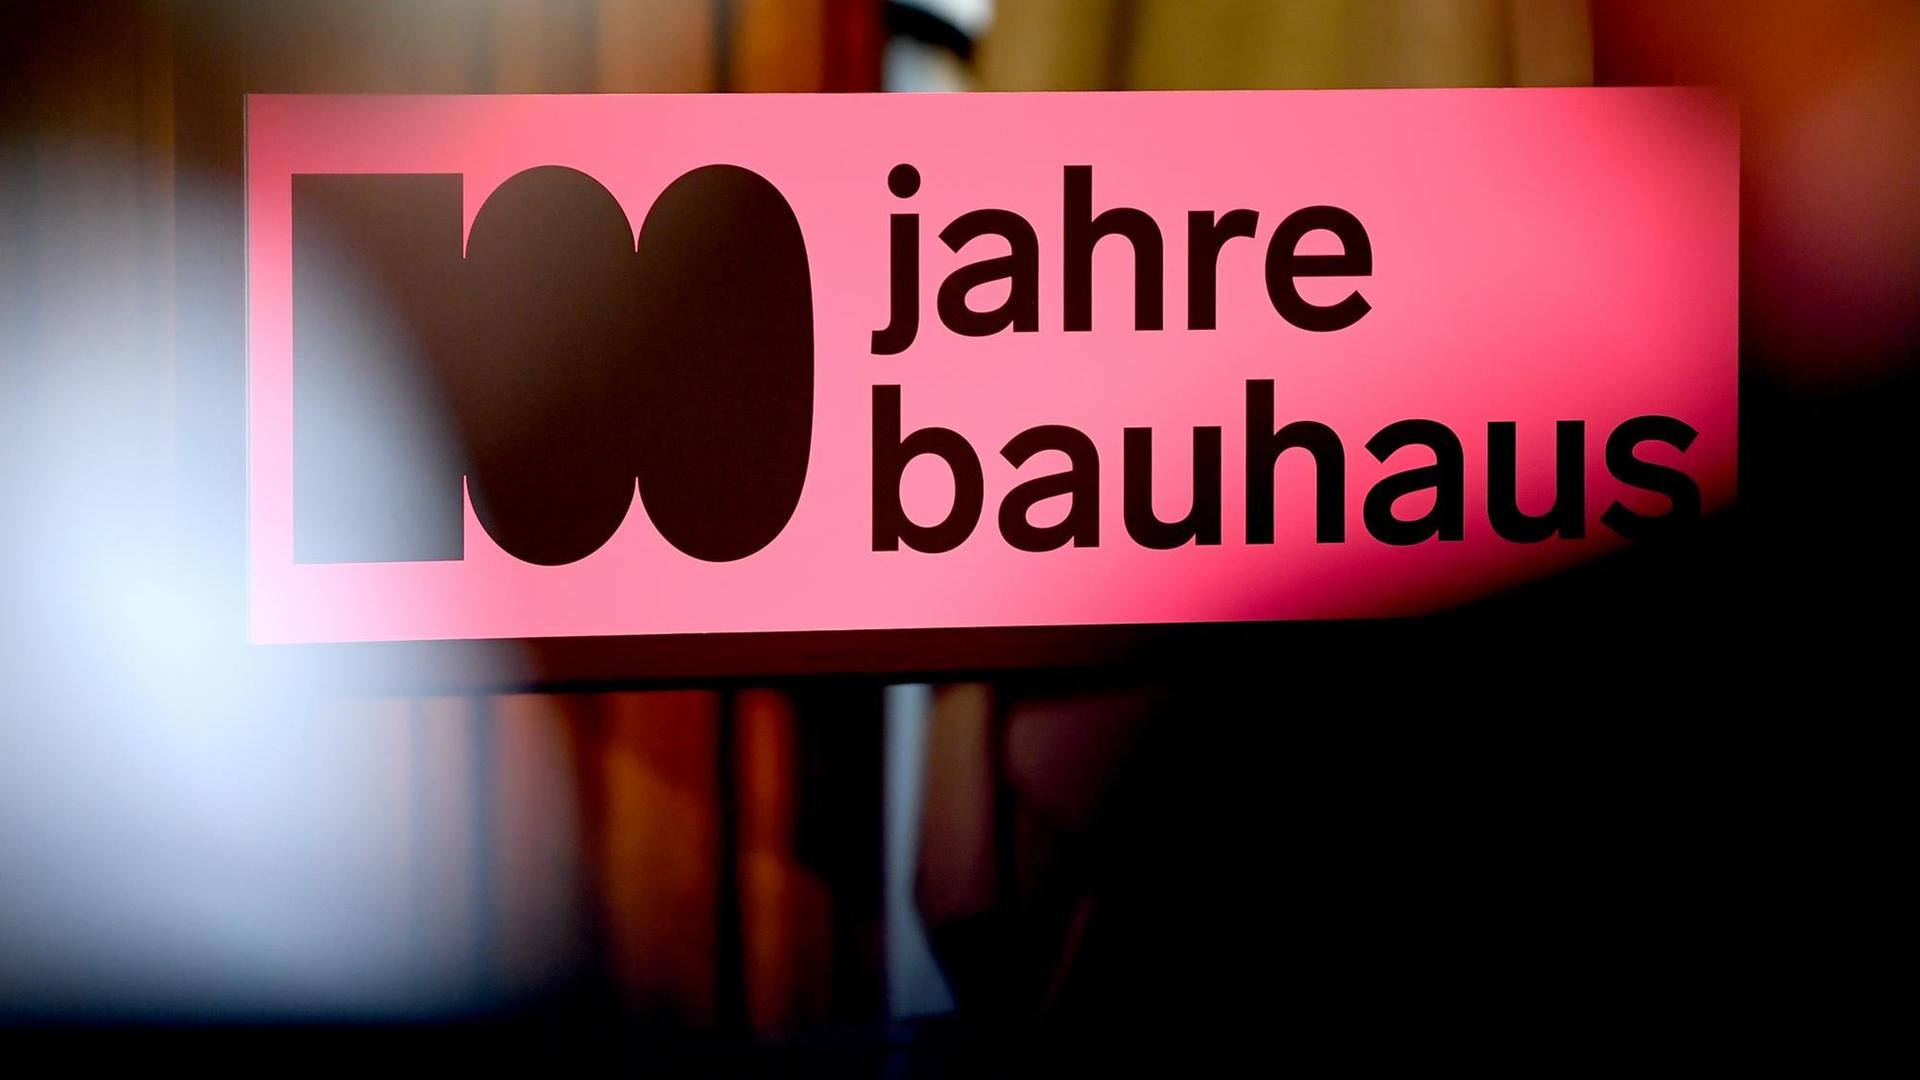 Der Schriftzug "100 jahre bauhaus" bei einer Pressekonferenz zum Bauhaus-Jubiläum. 2019 findet das 100-jährige Gründungsjubiläum des Bauhauses statt.